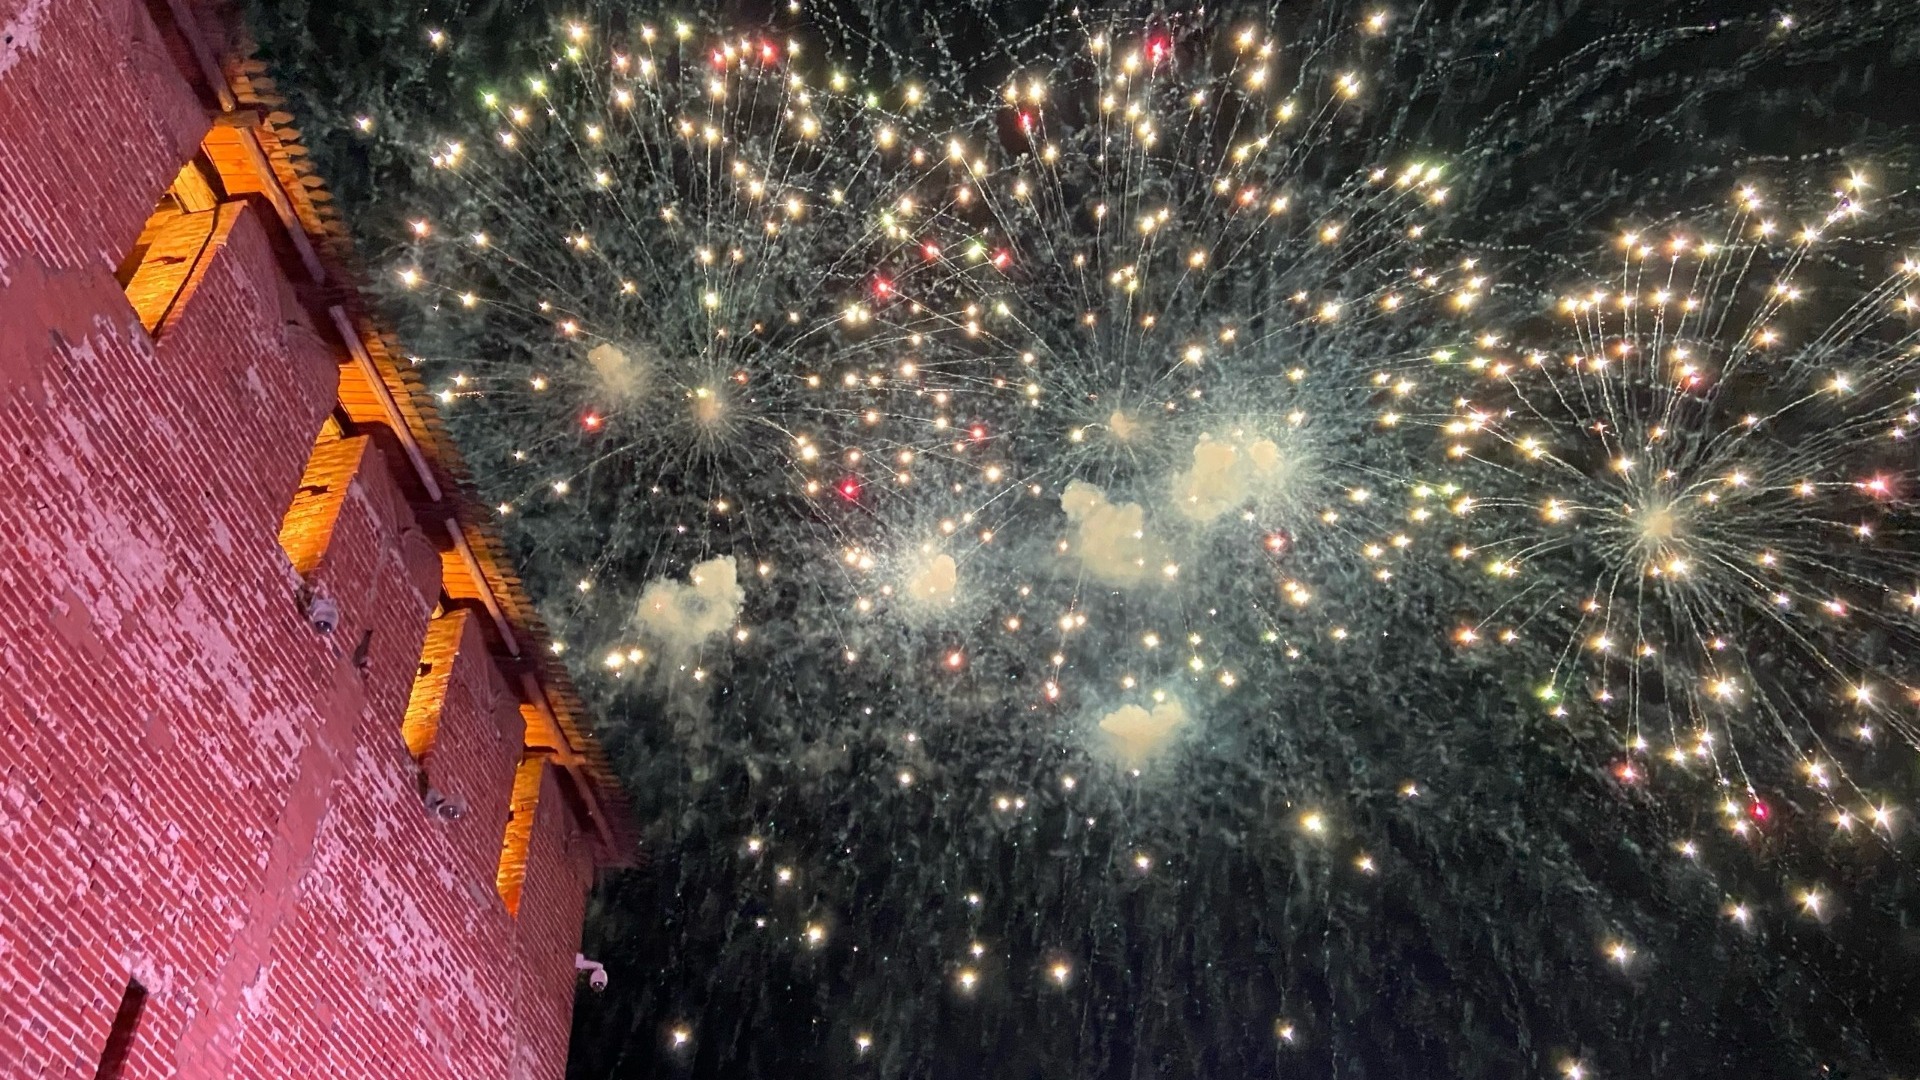 Опубликованы фотографии с празднования Дня города в Нижнем Новгороде